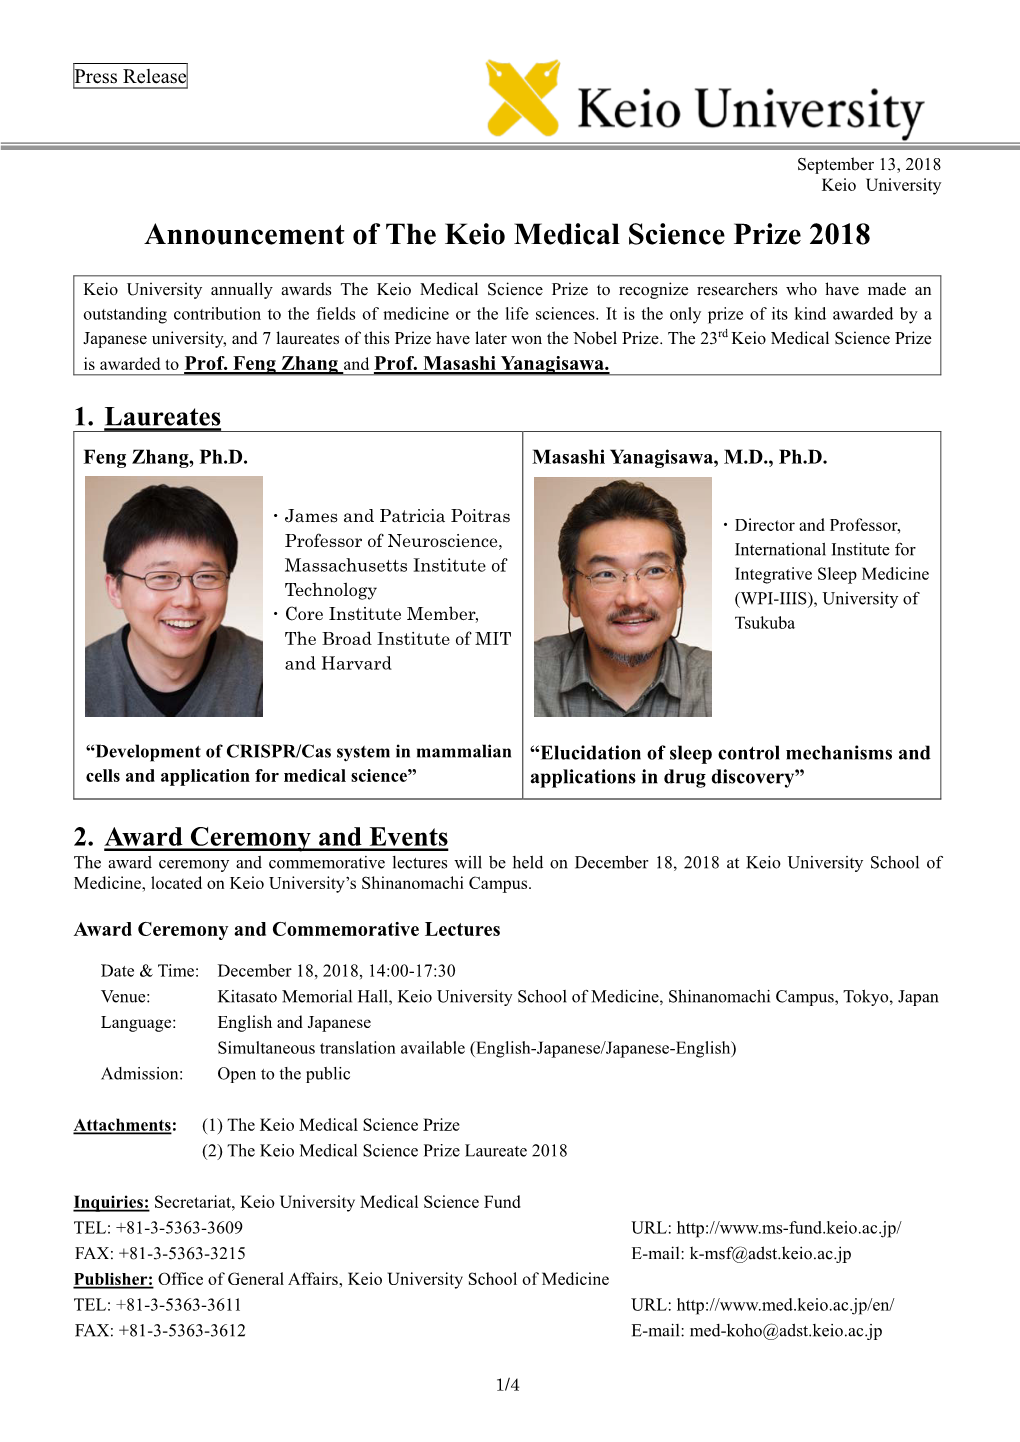 Keio Medical Science Prize 2018